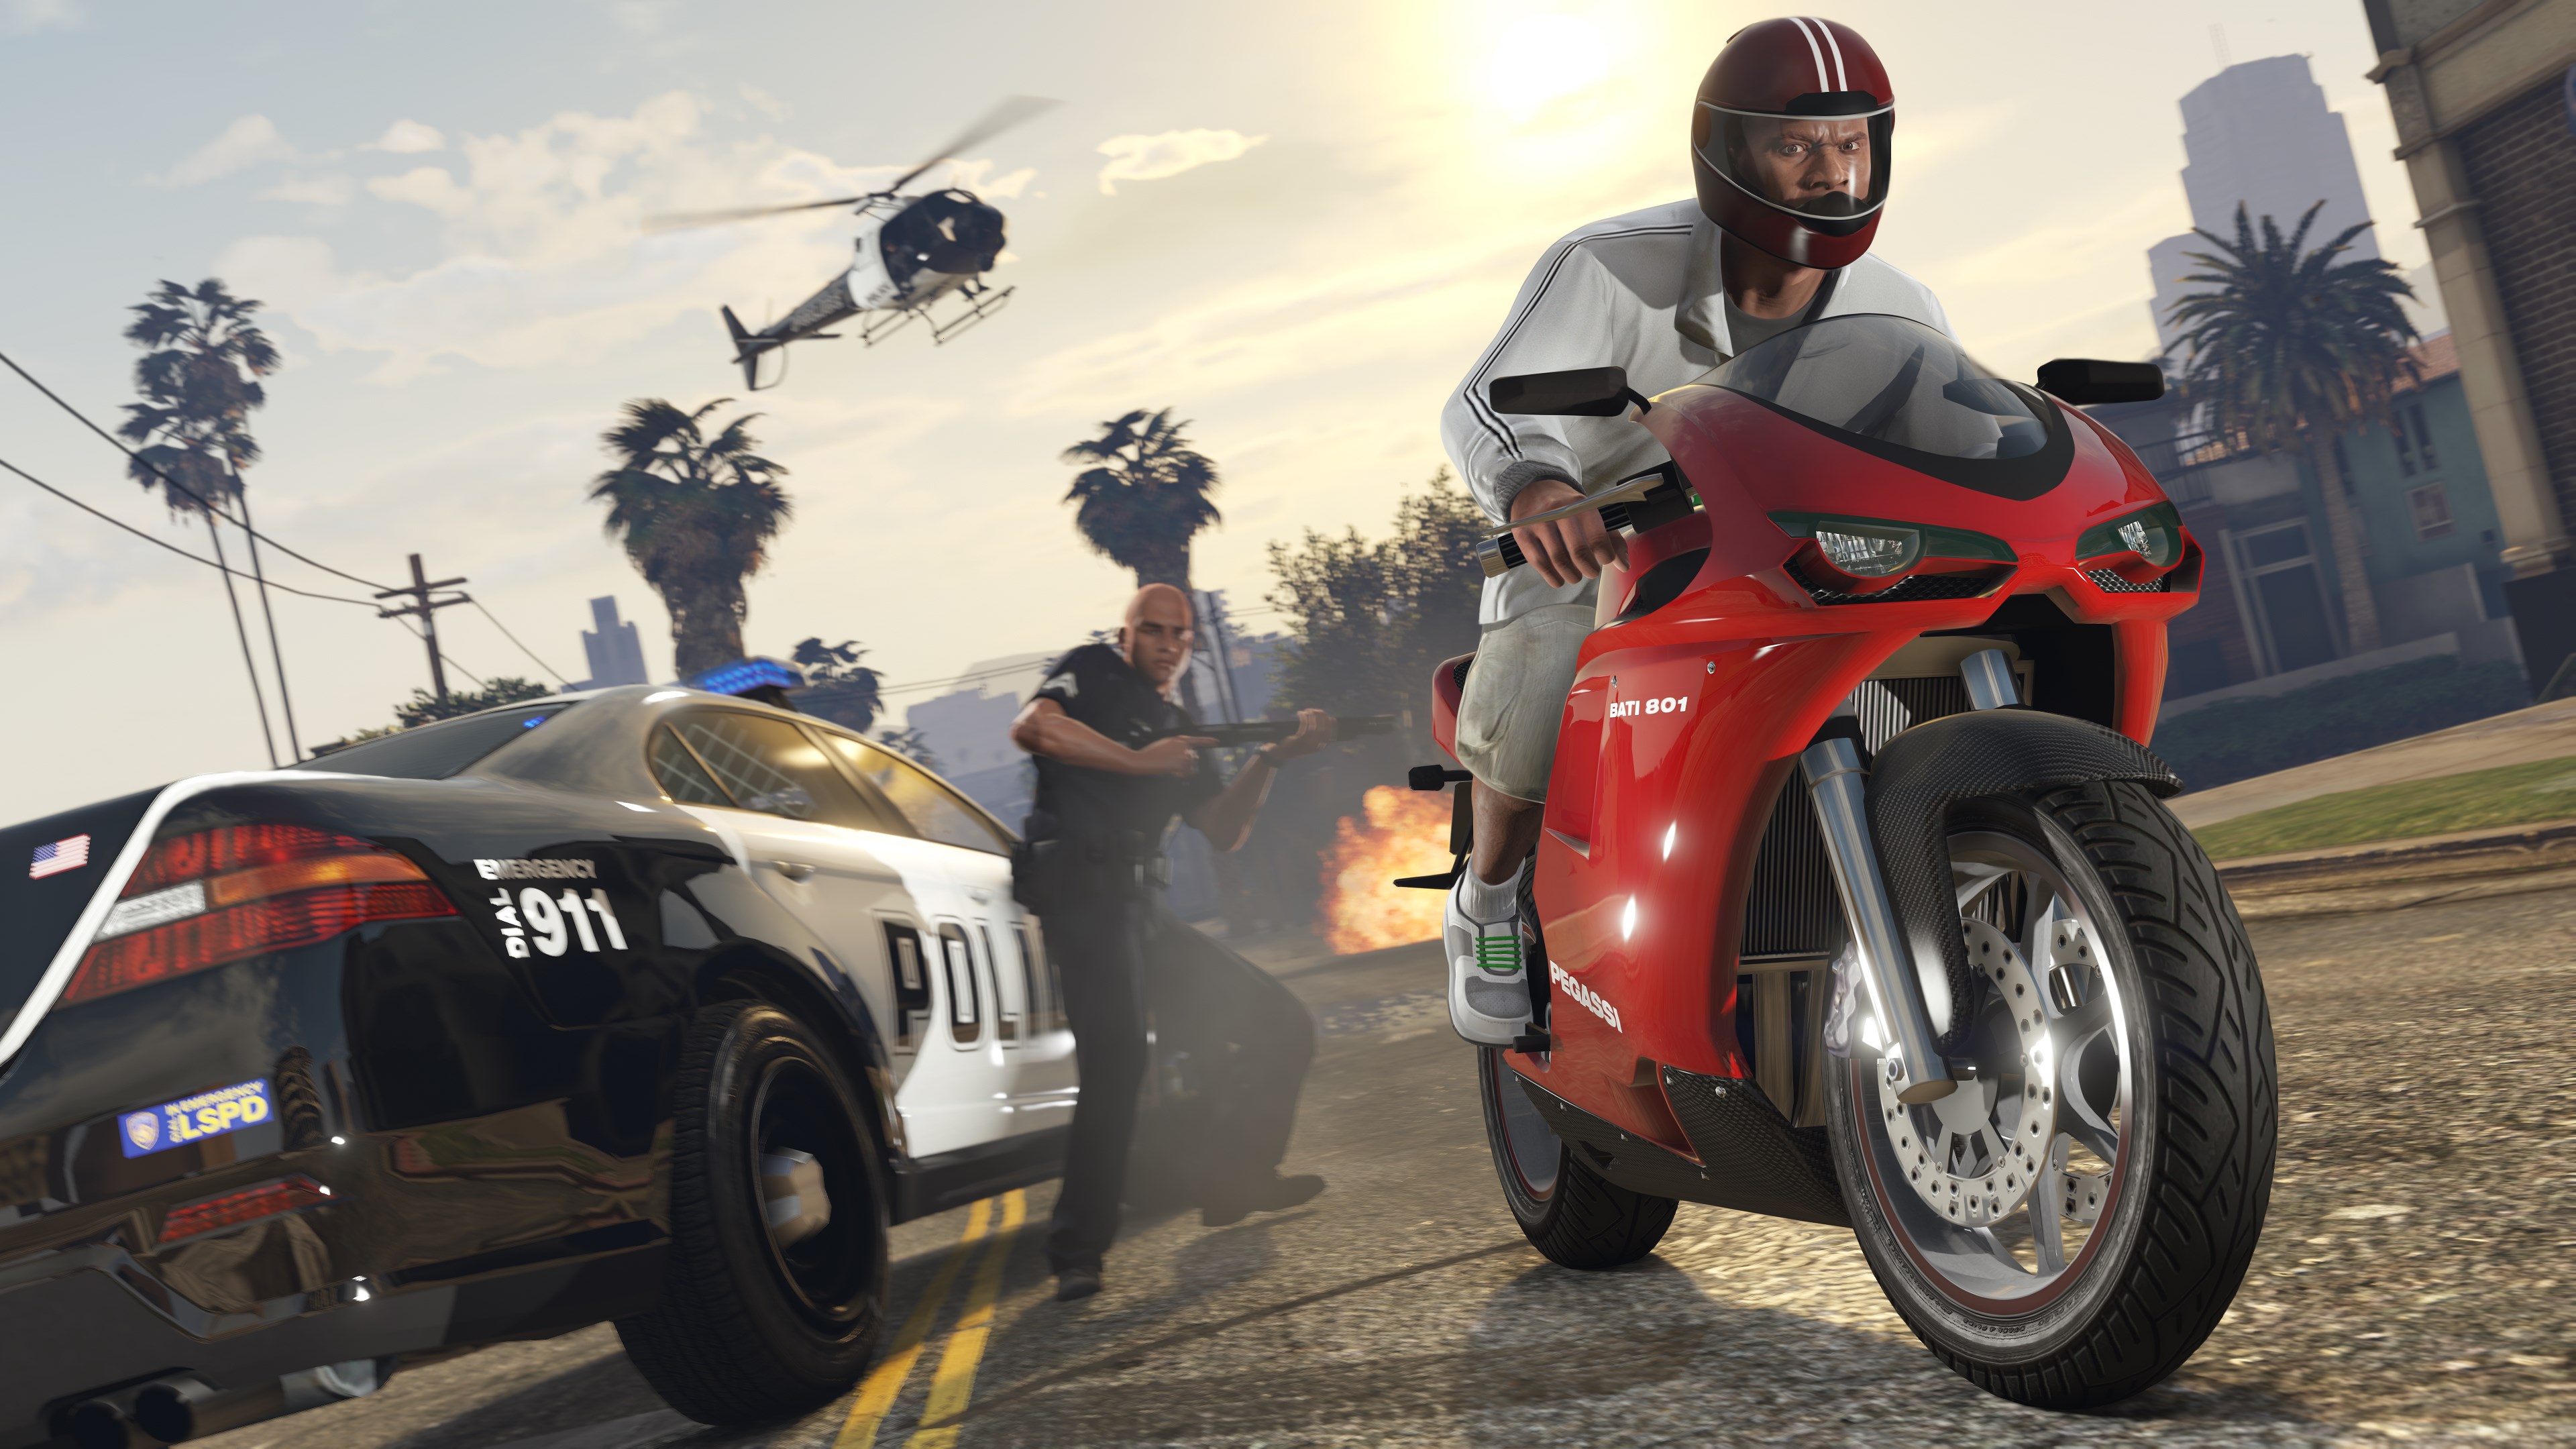 Скриншот №14 к Grand Theft Auto V